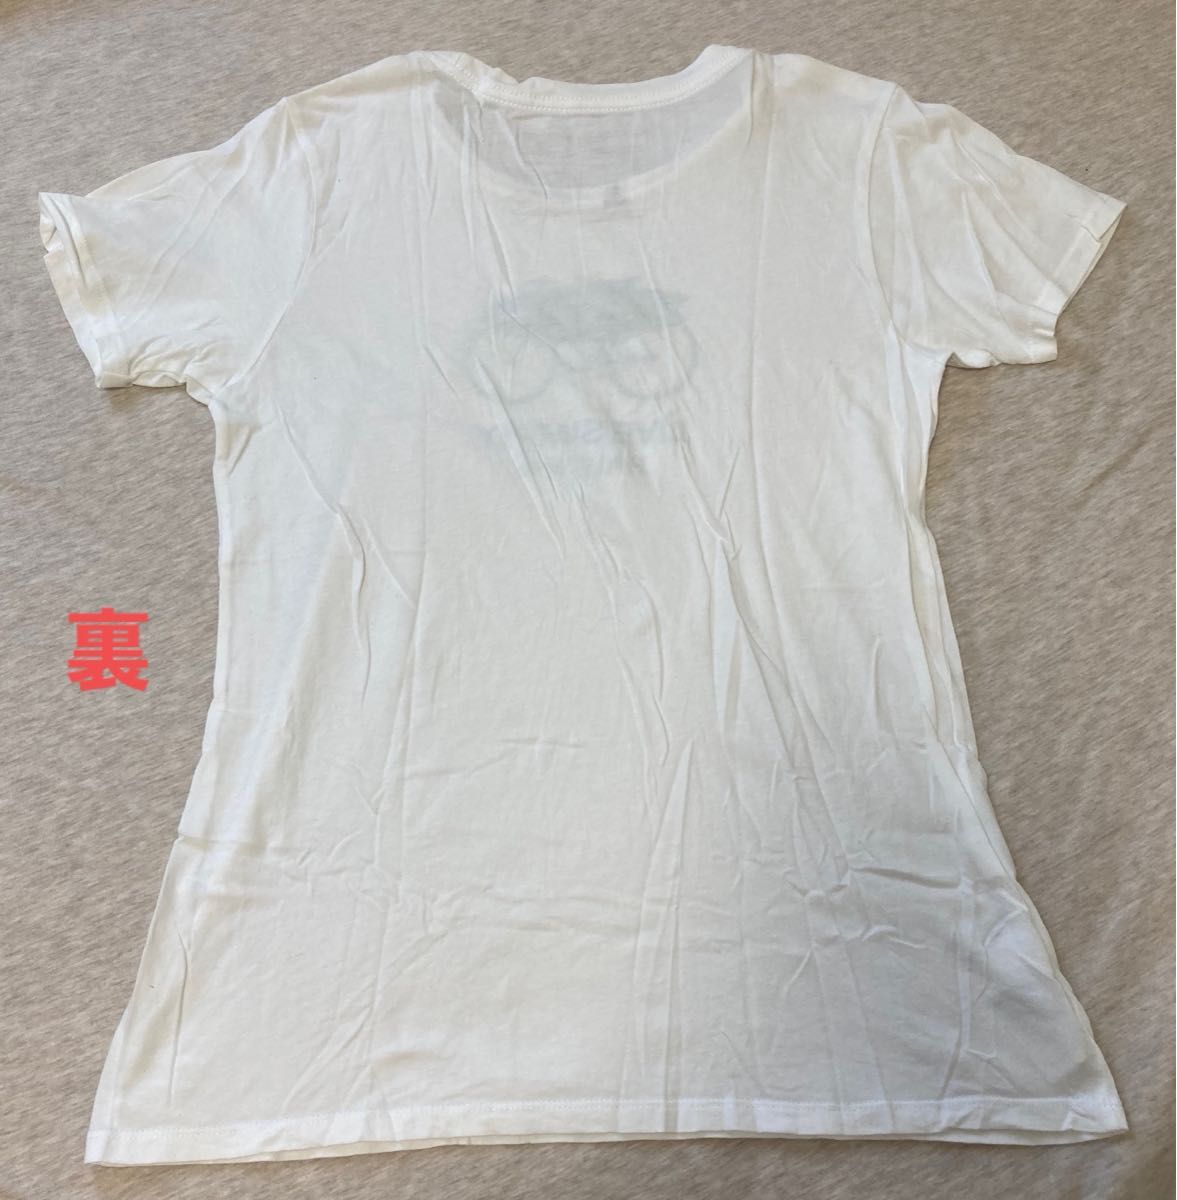 【ハワイ限定】【中古品】【美品】Patagonia パタゴニア S 白 綿100% 半袖Tシャツ